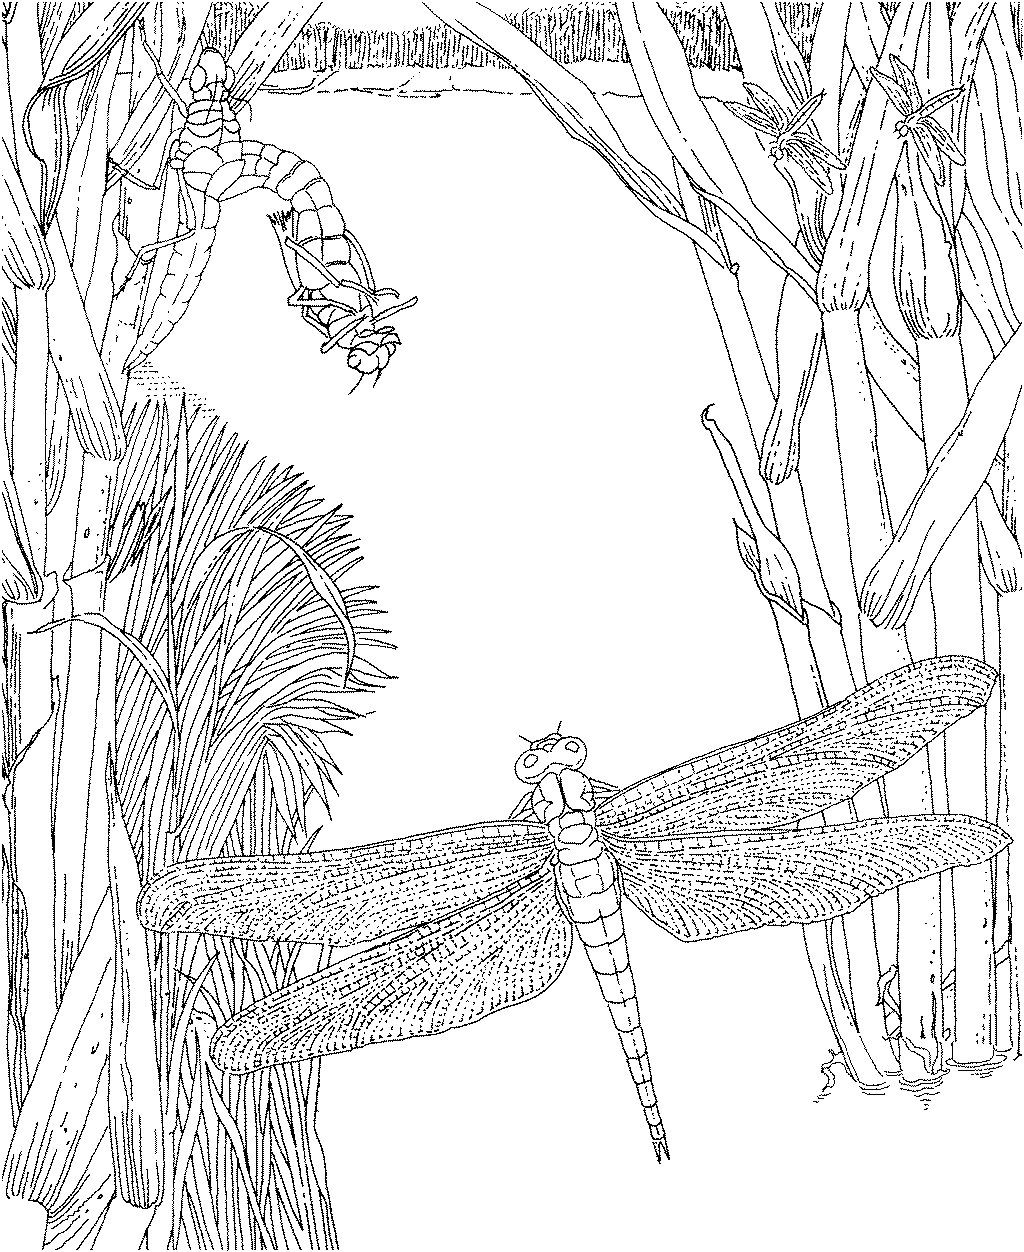 蜻蜓在树叶上_简笔画 - 搜图案网